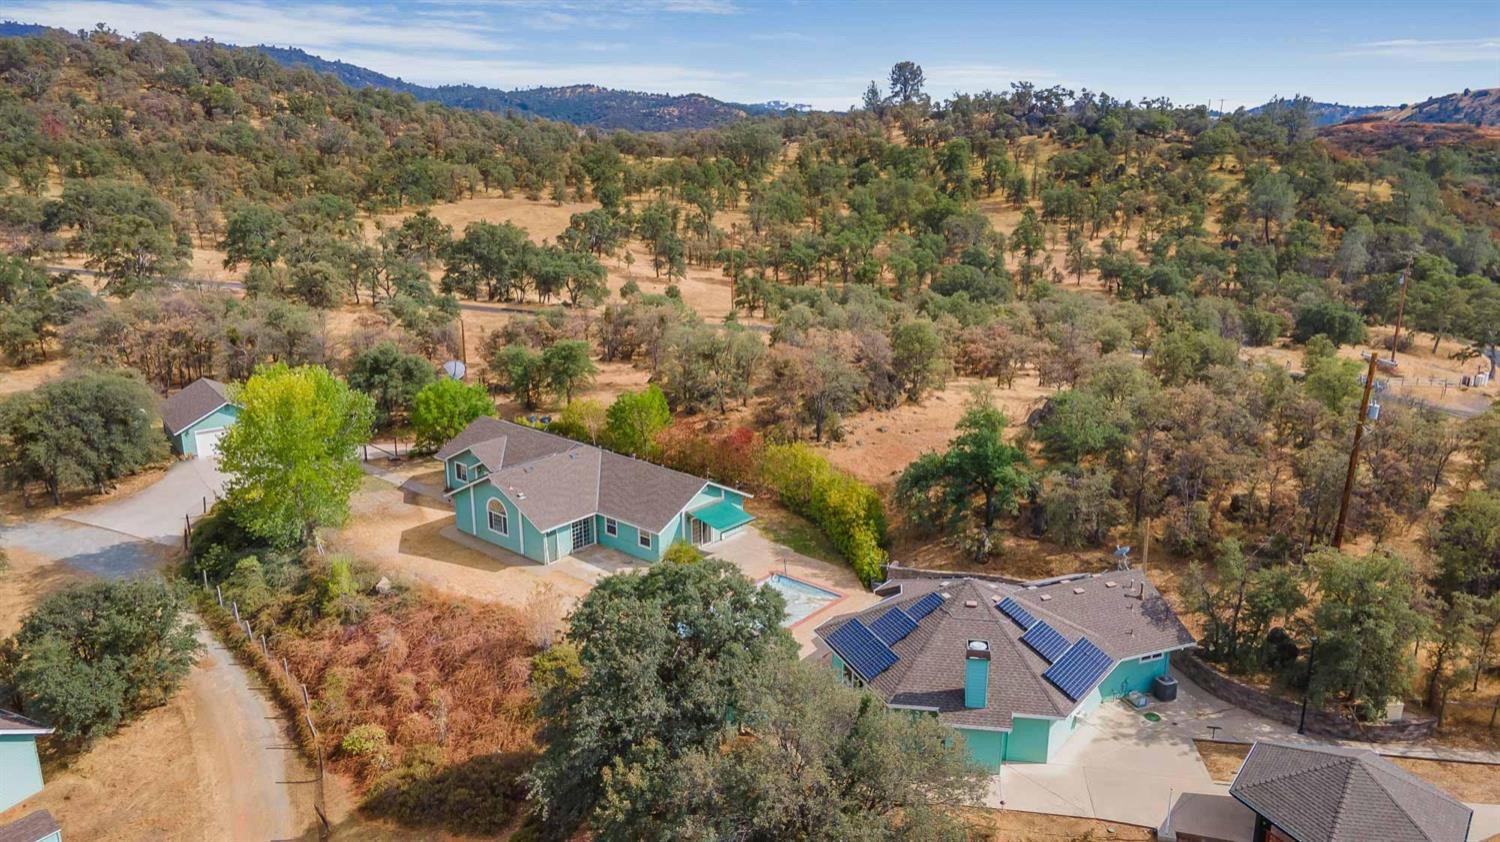 Photo of 14550 Moccasin Ranch Rd in La Grange, CA